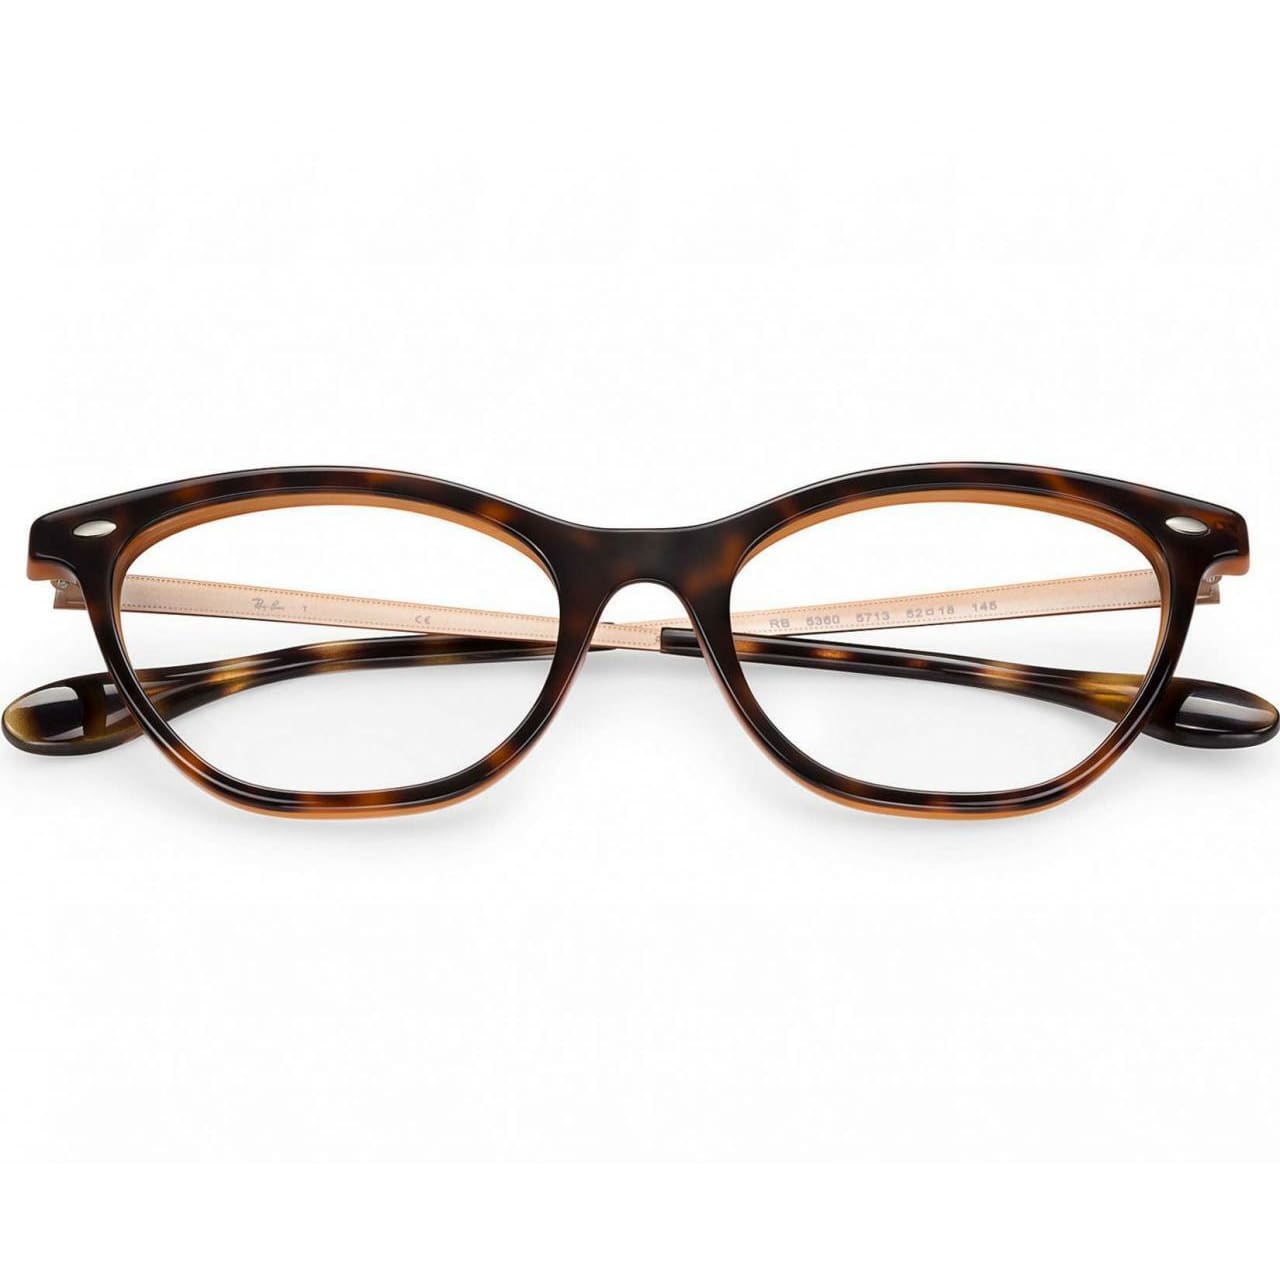 Ray-Ban RB5360-5713 Tortoise / Bronze Copper Full Rim Cat Eye Eyeglasses Frames 8053672786088